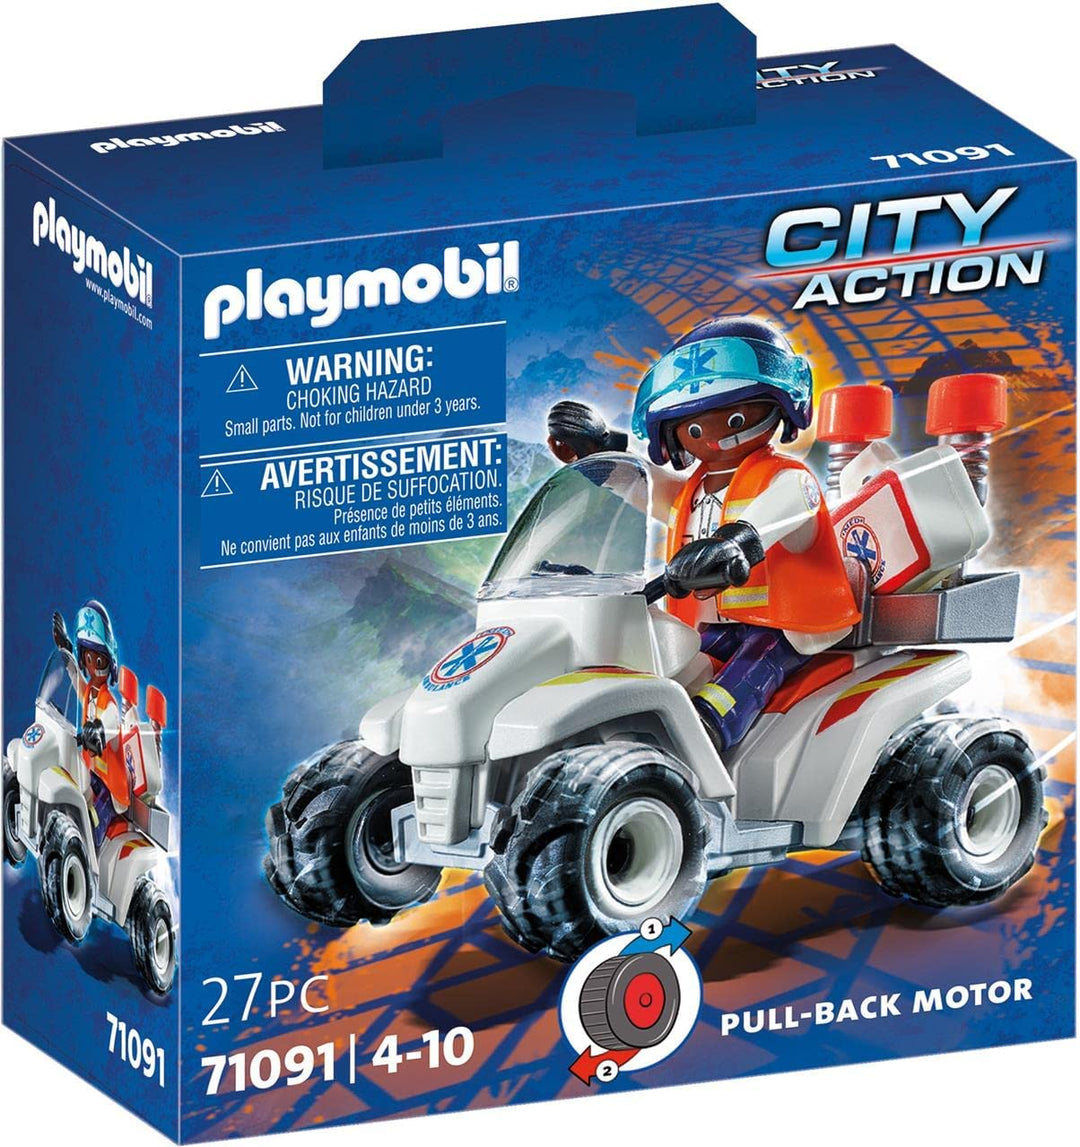 PLAYMOBIL City Action 71091 Medizinisches Quad mit Rückzugsmotor, Spielzeug für Kinder